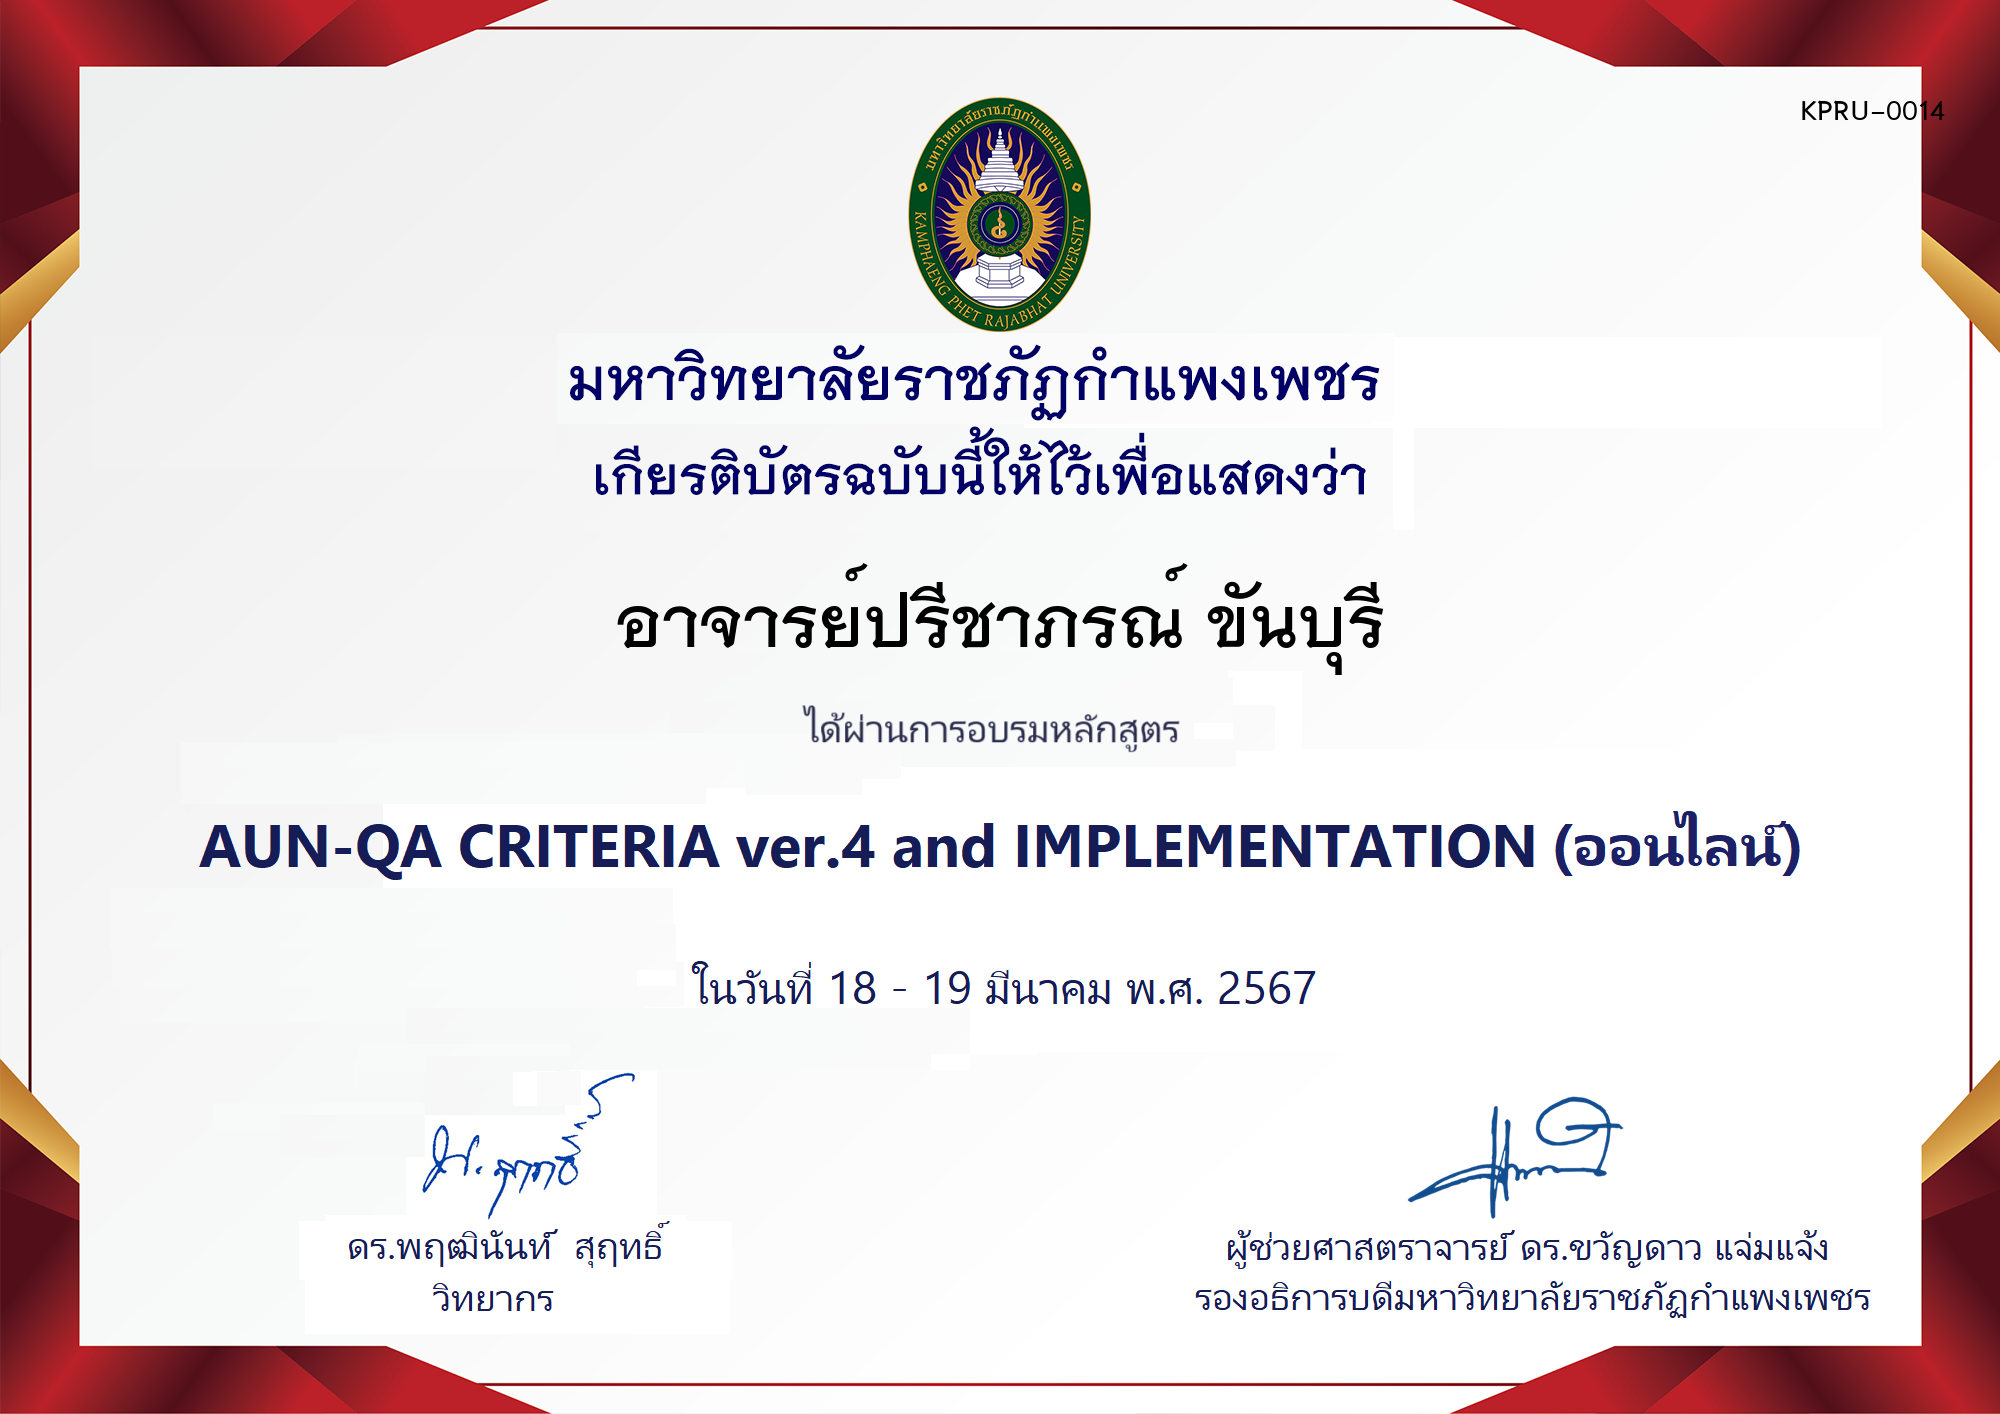 เกียรติบัตร โครงการอบรม AUN-QA criteria ver.4 and Implementation ของ อาจารย์ปรีชาภรณ์ ขันบุรี